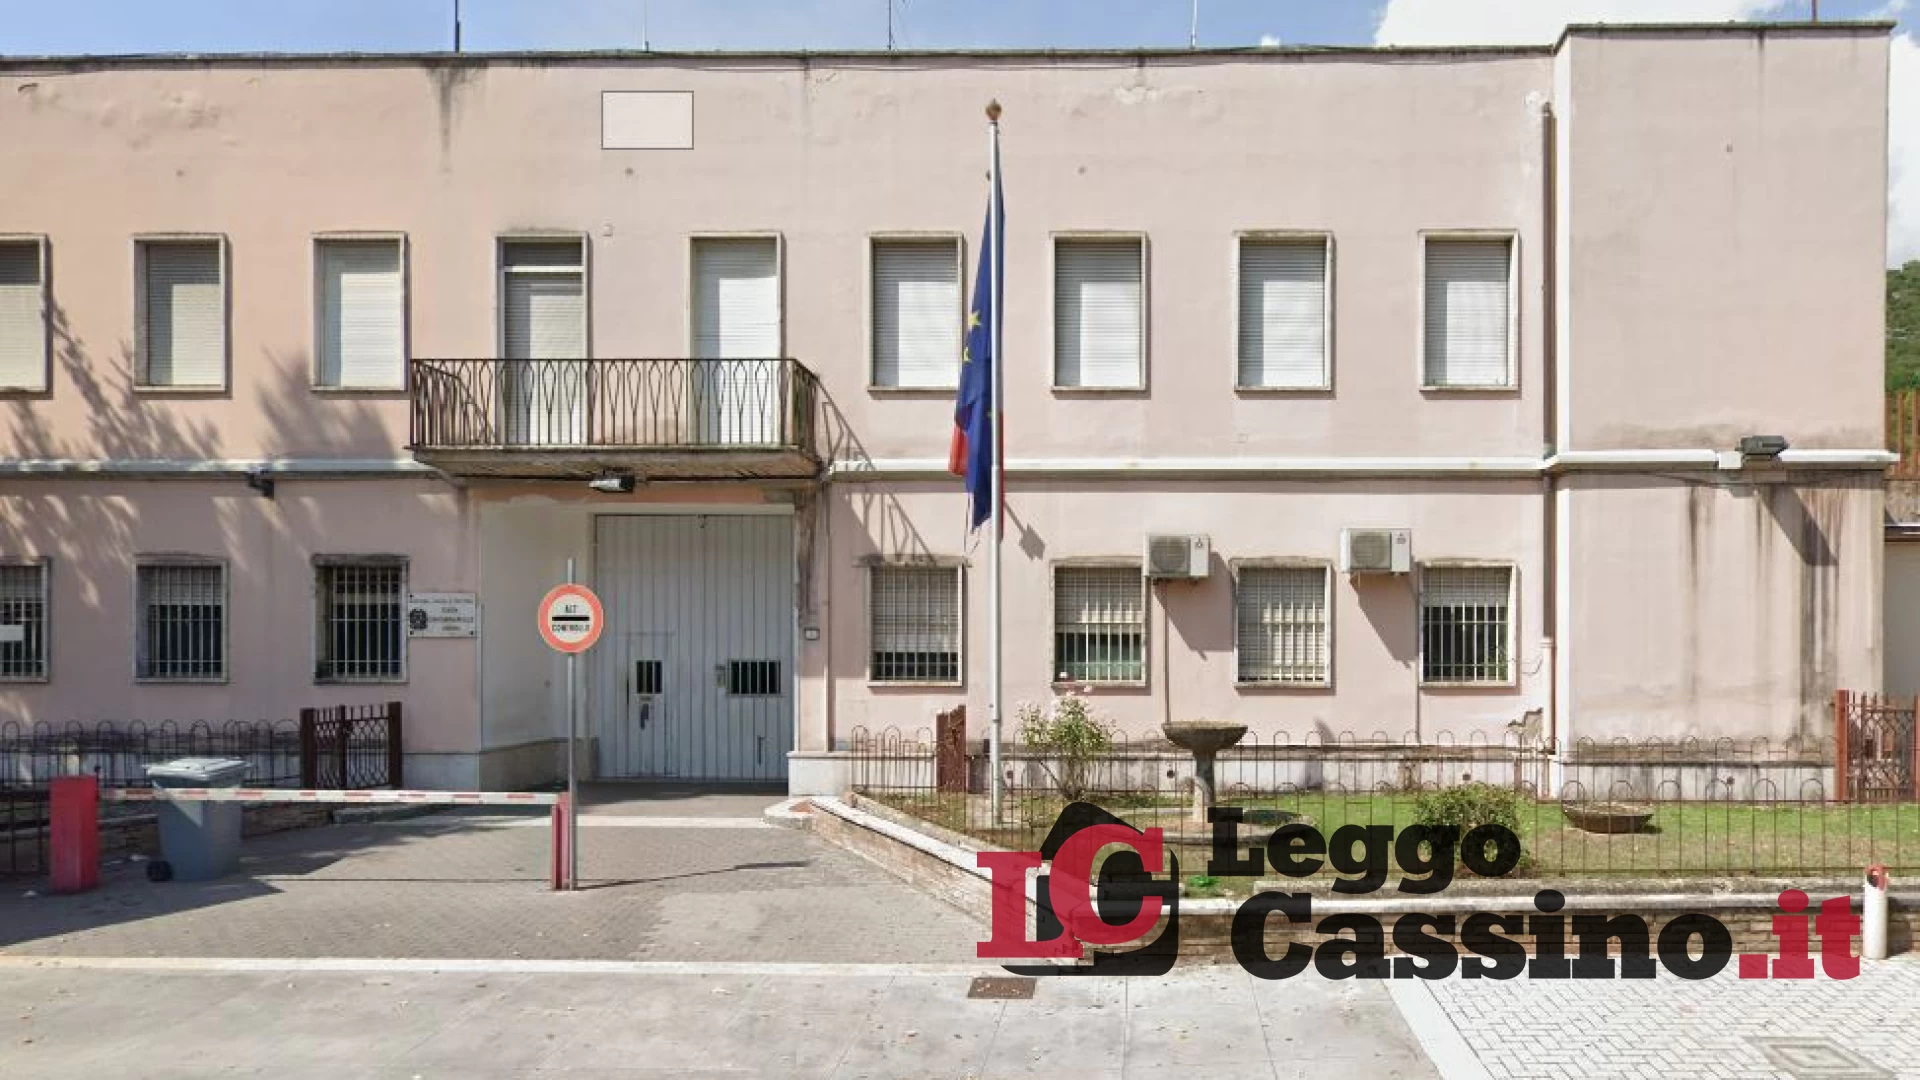 Storie di riscatto dietro le sbarre del carcere di Cassino